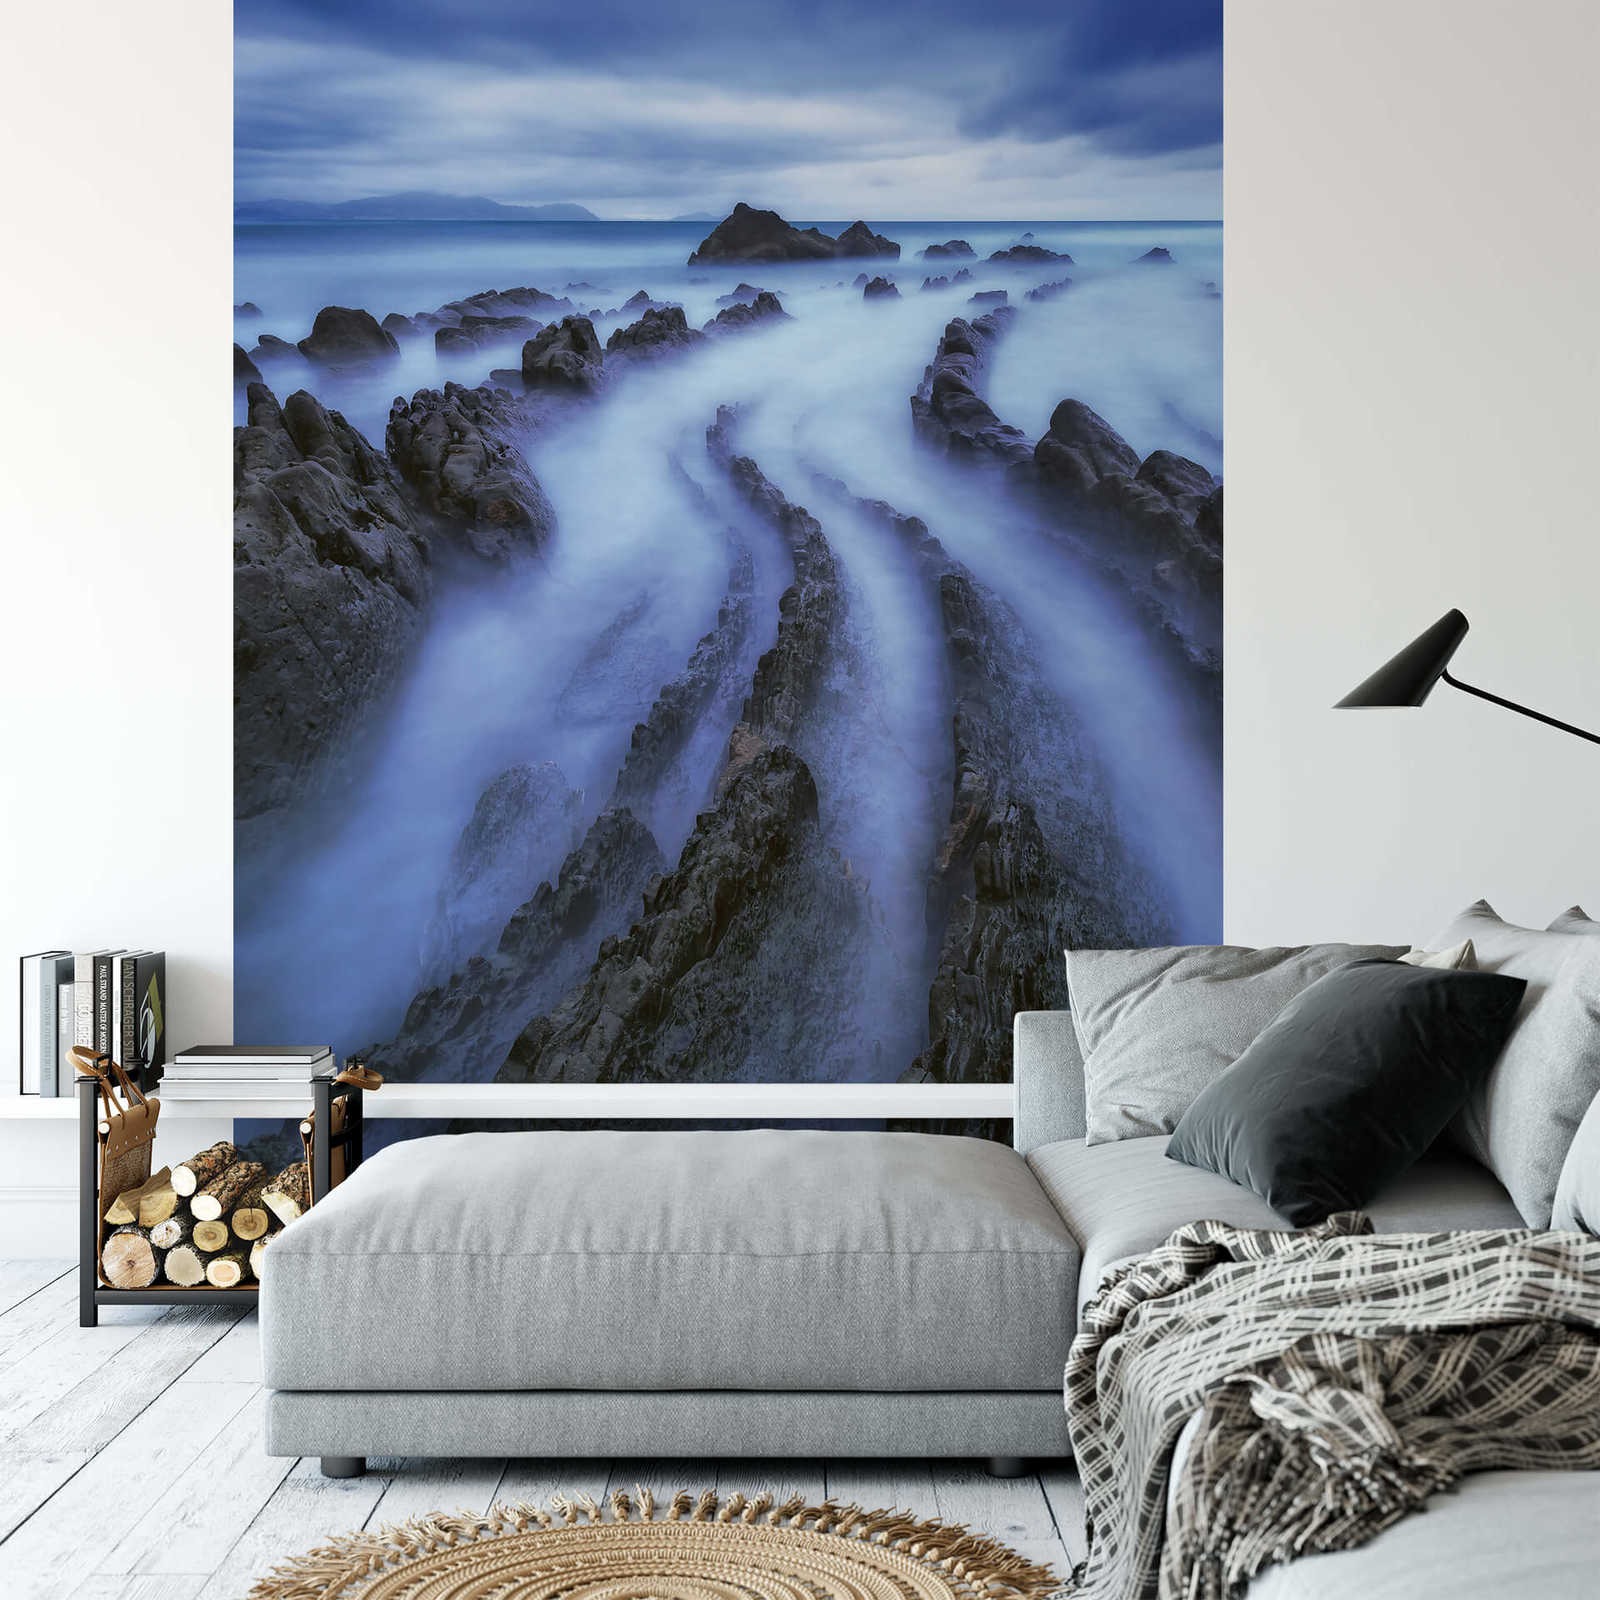             Fototapete Landschaft Nebel auf Meer – Blau, Grau
        